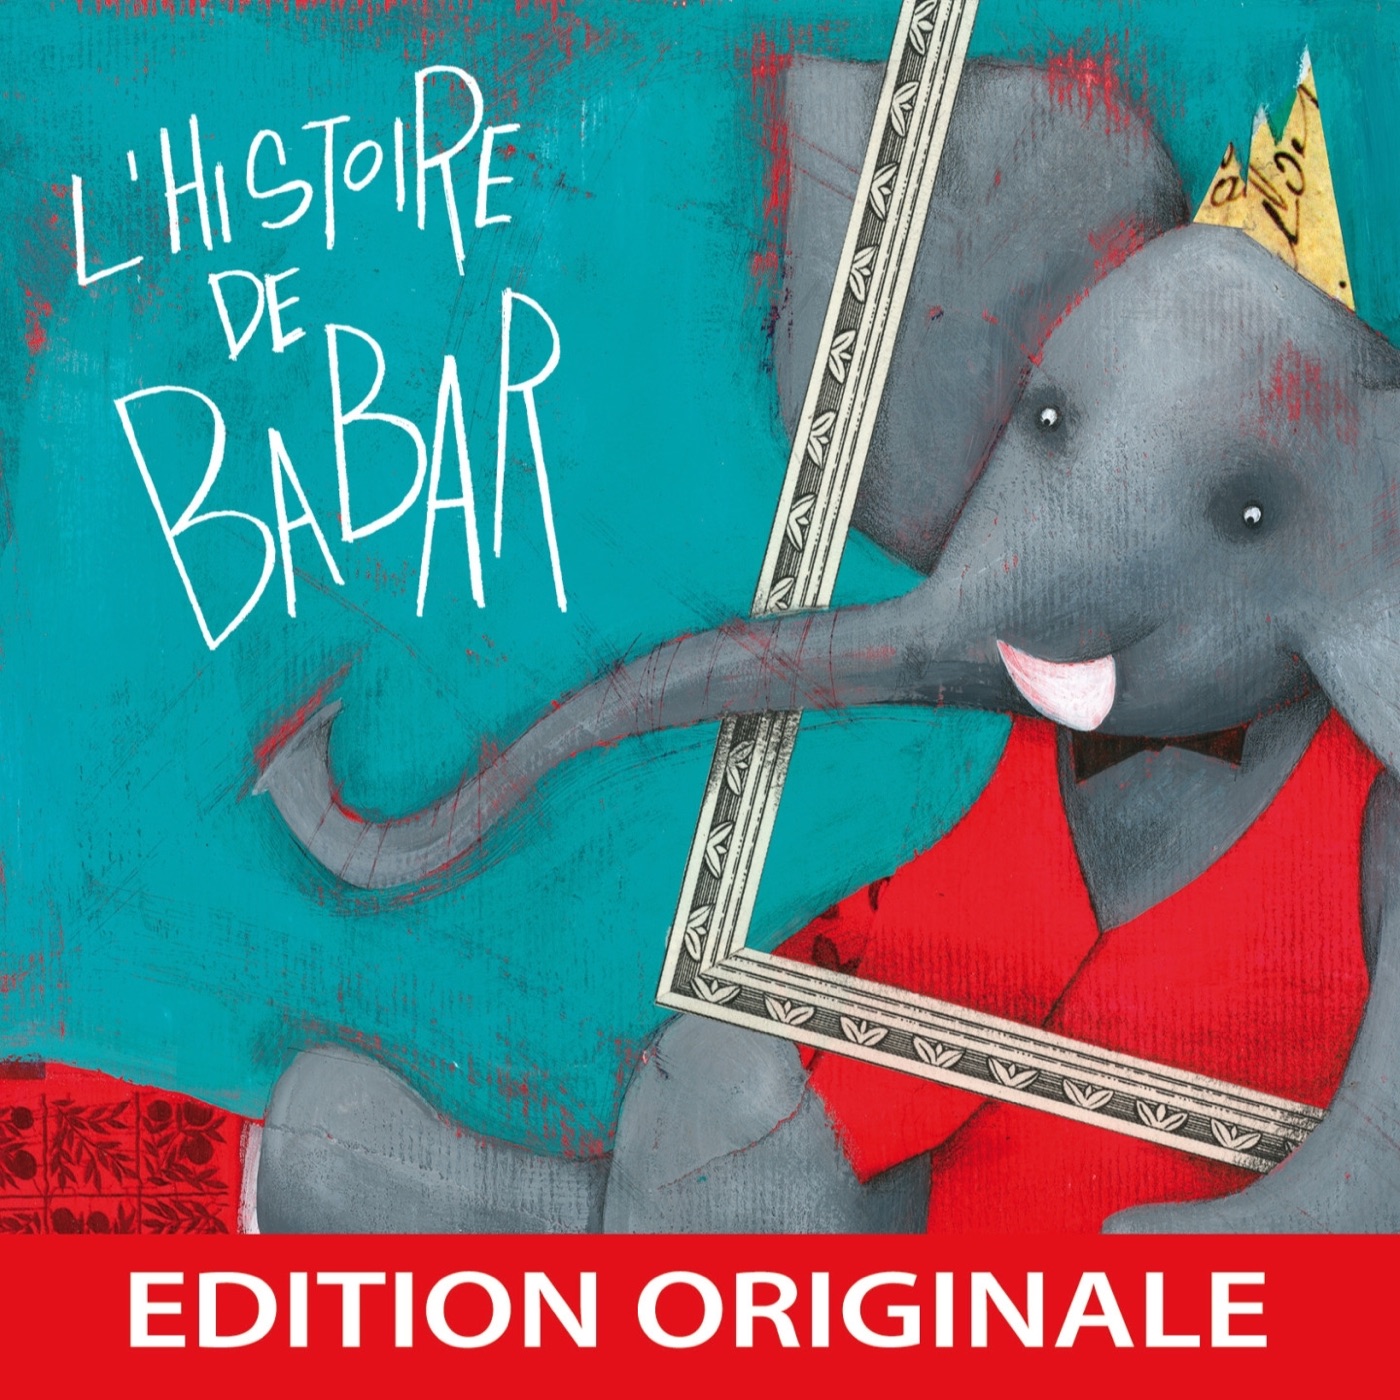 L'histoire de babar by Jean De Brunhoff